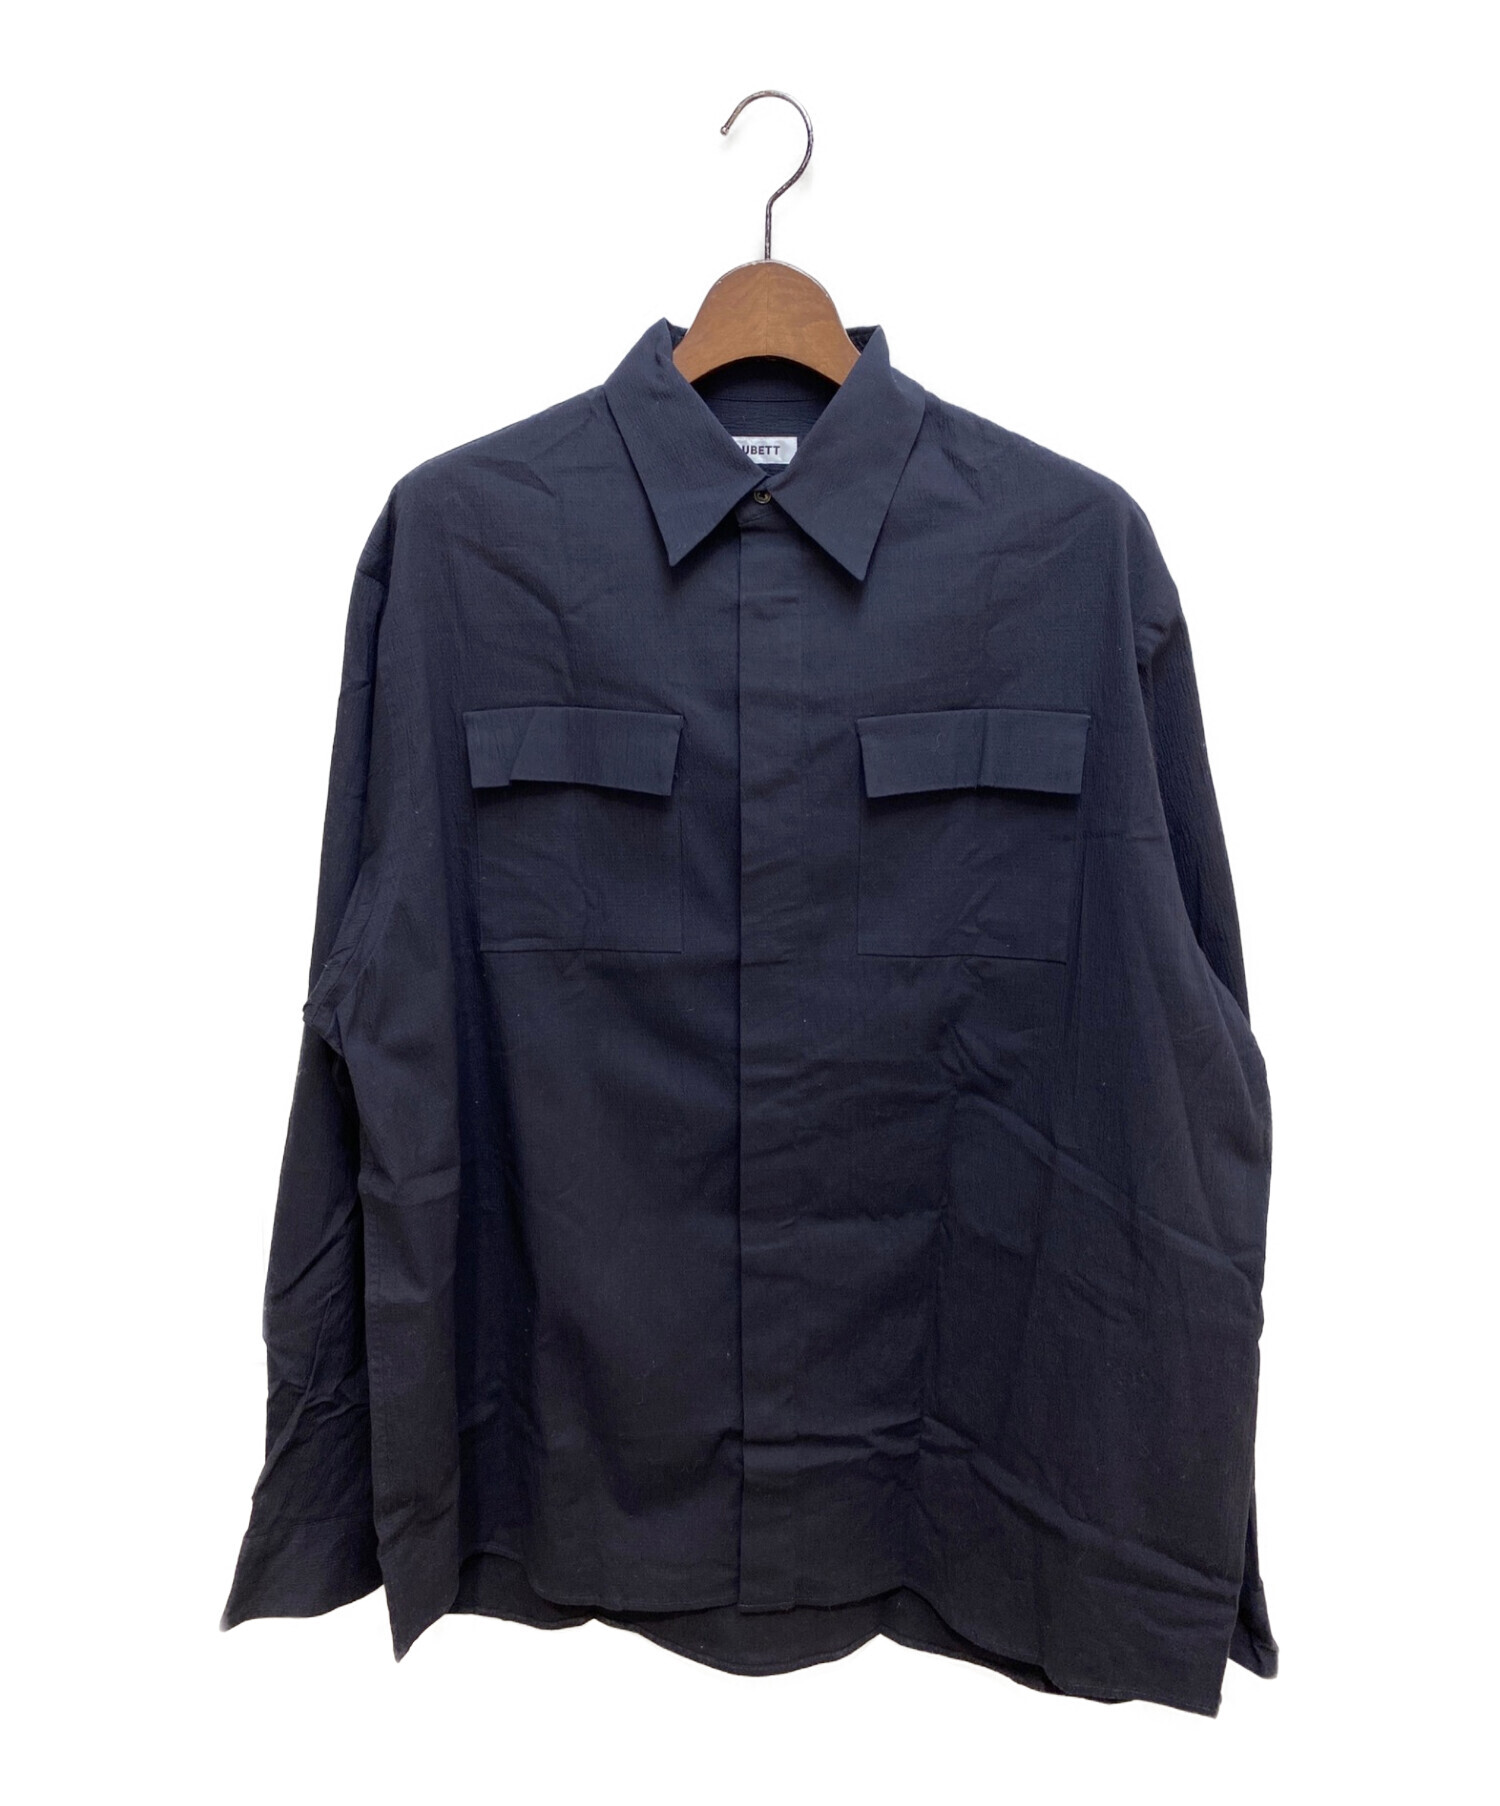 AUBETT (オーベット) 21SS クレープクロス フラップポケット オーバーサイズシャツ ネイビー サイズ:M